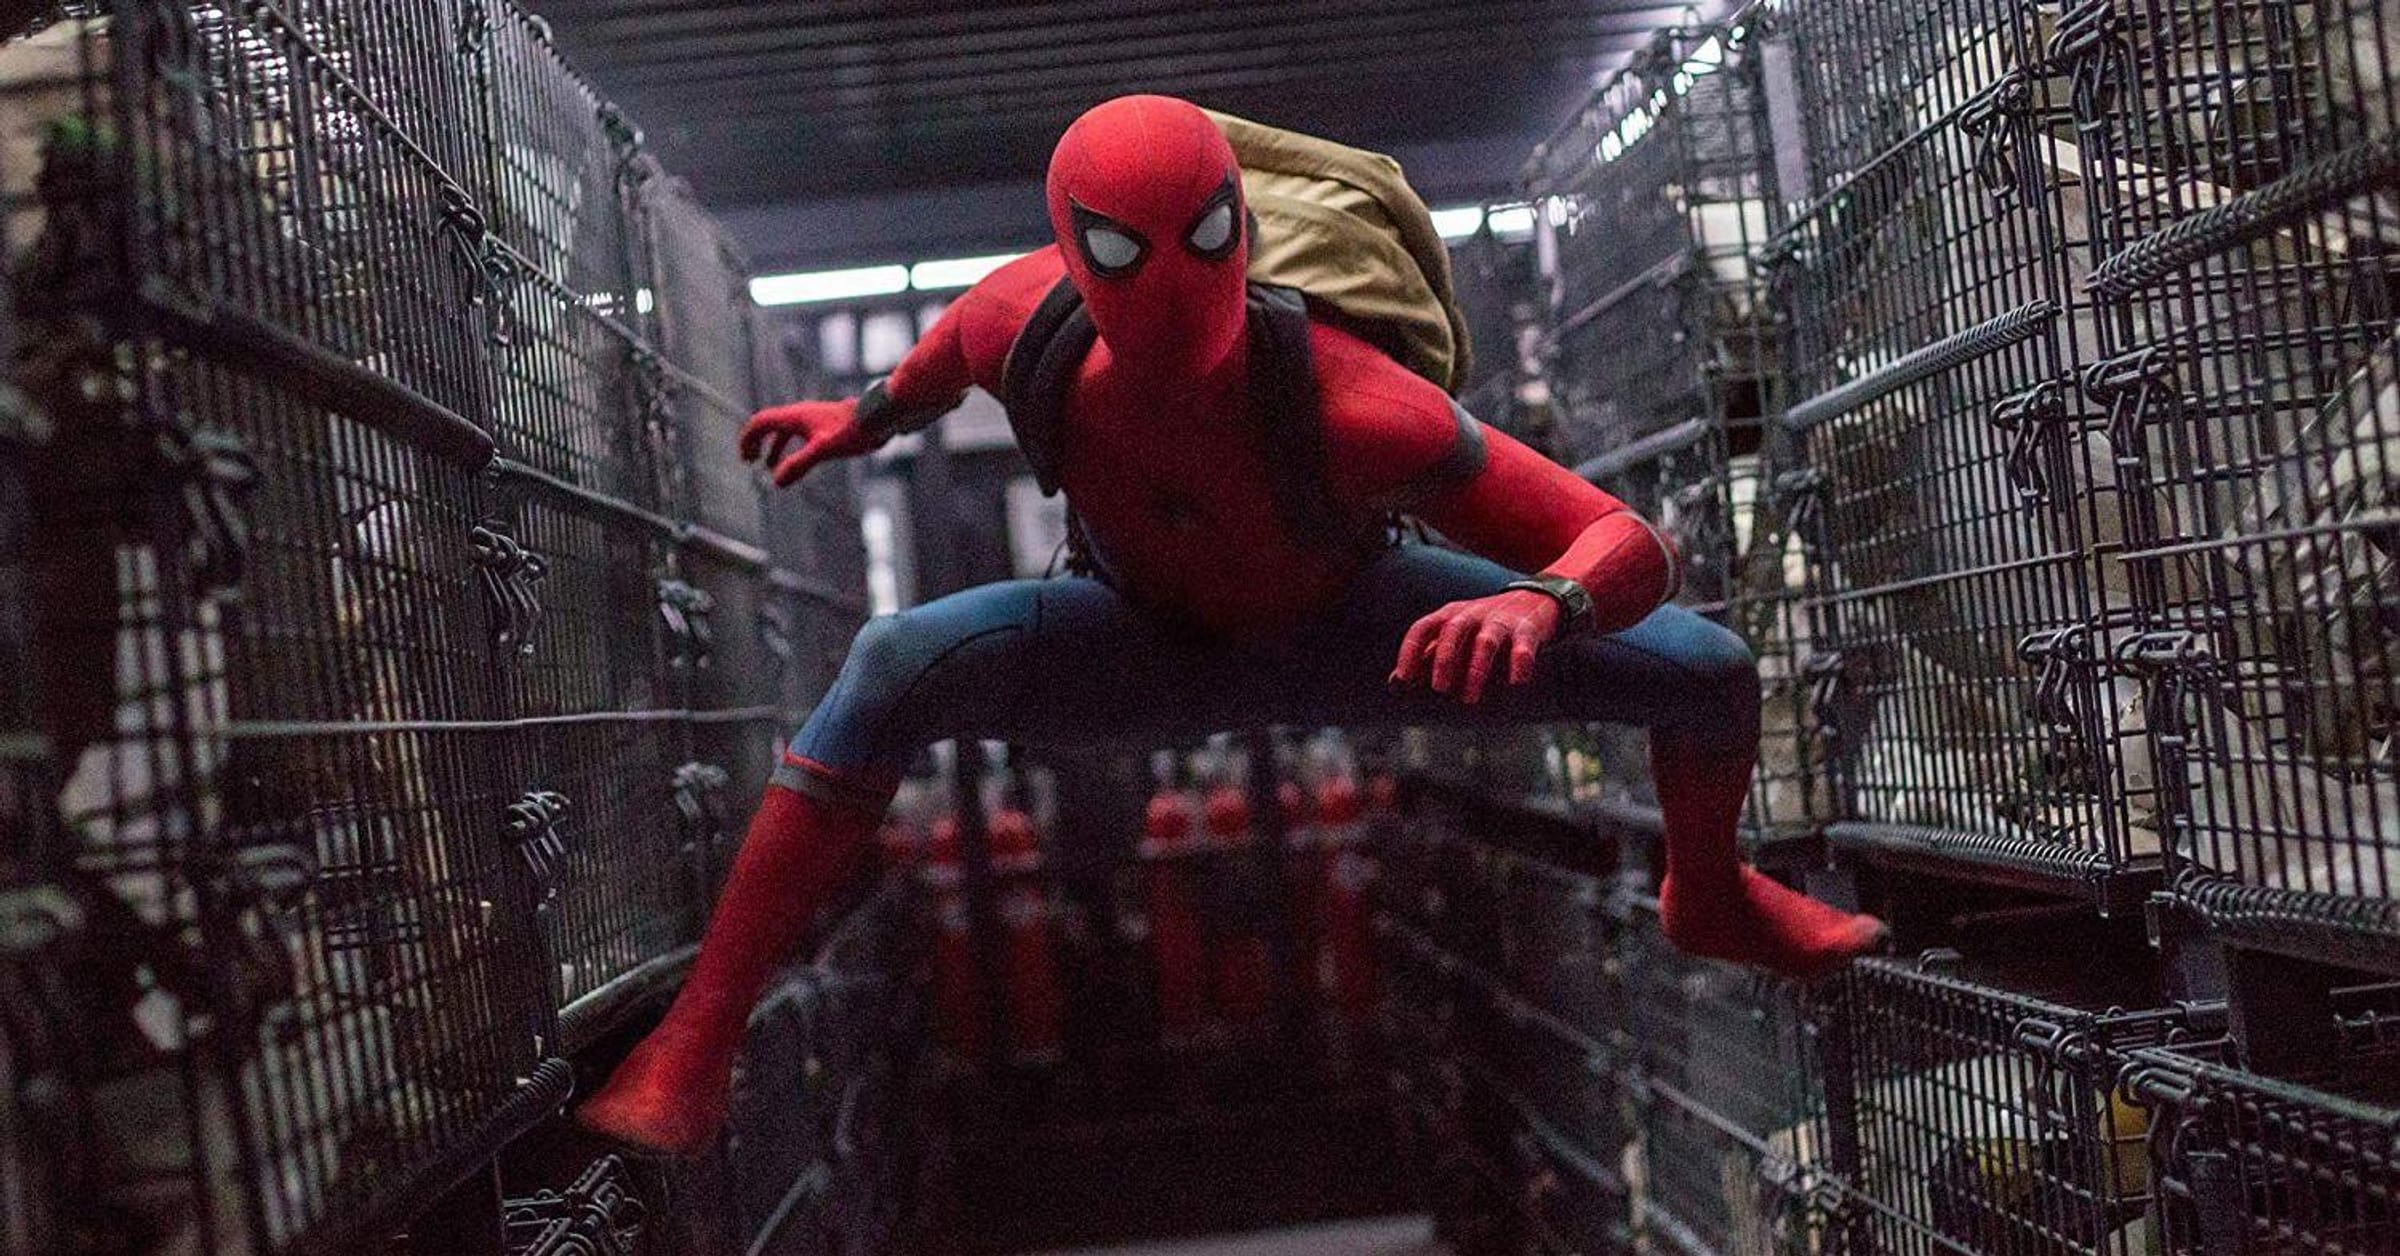 Spider-Man Movies Ranked Worst to Best